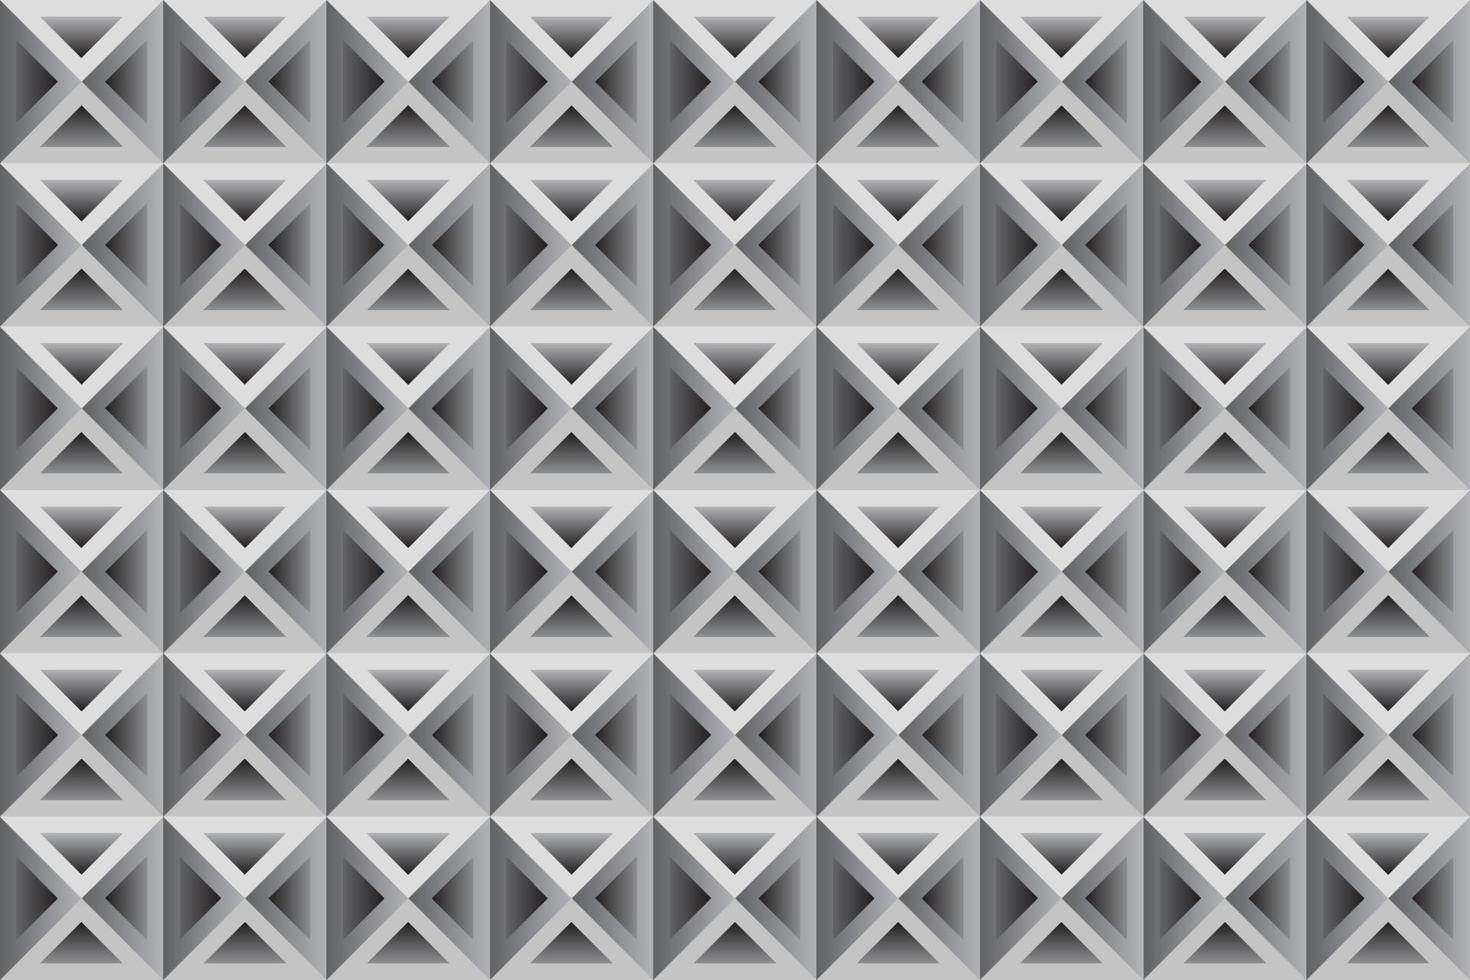 fondo monocromo con formas geométricas repetitivas. fondo de mosaico abstracto con cuadrados y triángulos. vector